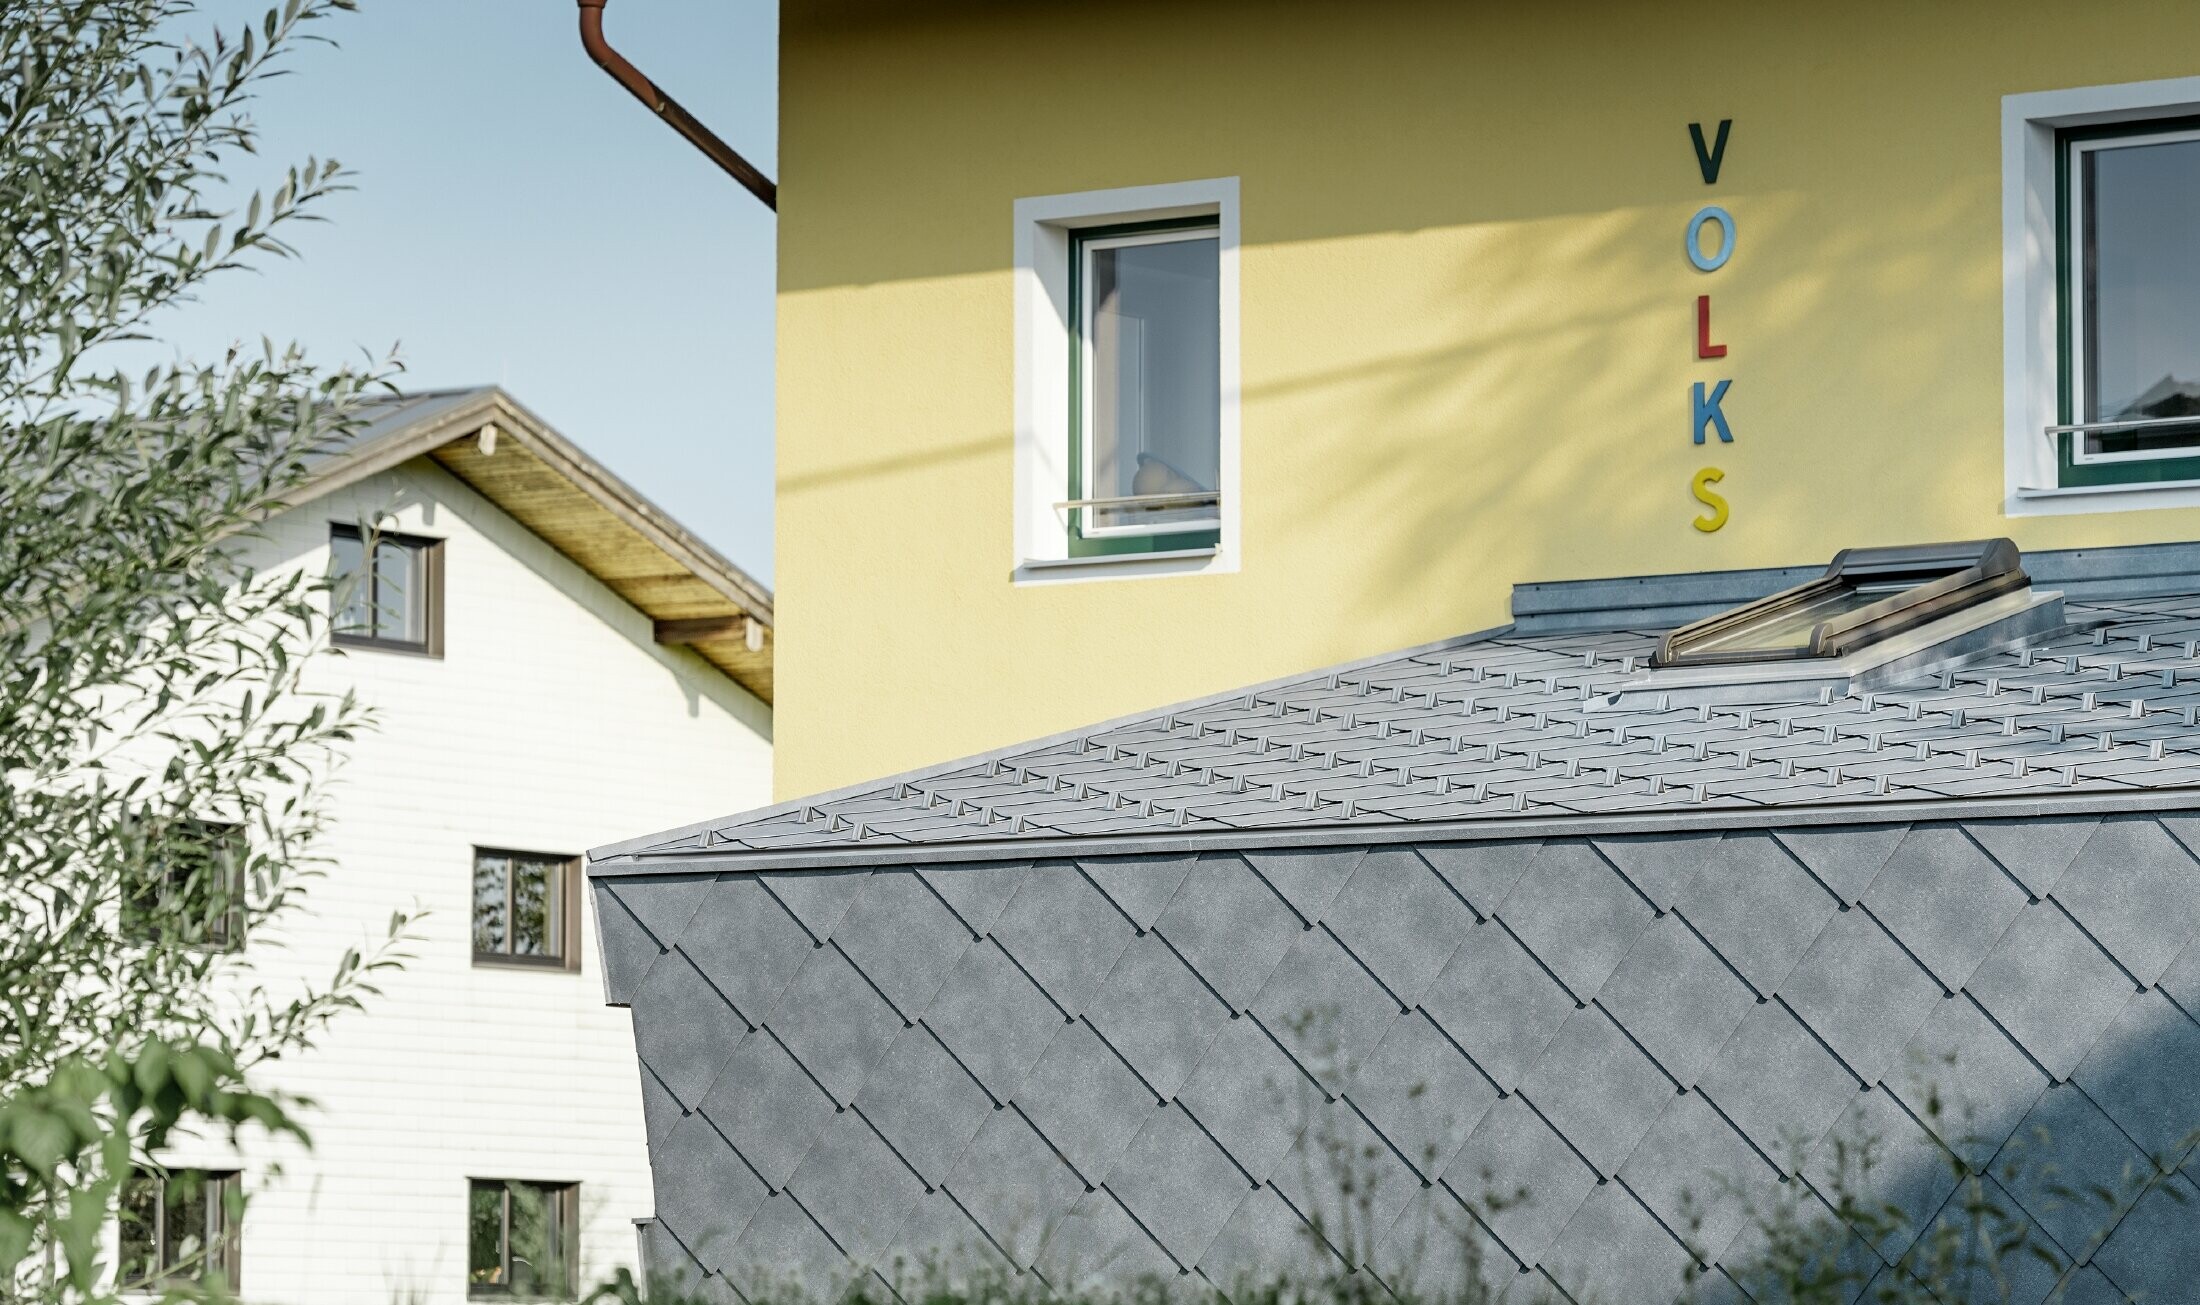 Dobudówka szkoły pokryta aluminiowym rombem ściennym i dachowym PREFA w kolorze kamiennym szarym